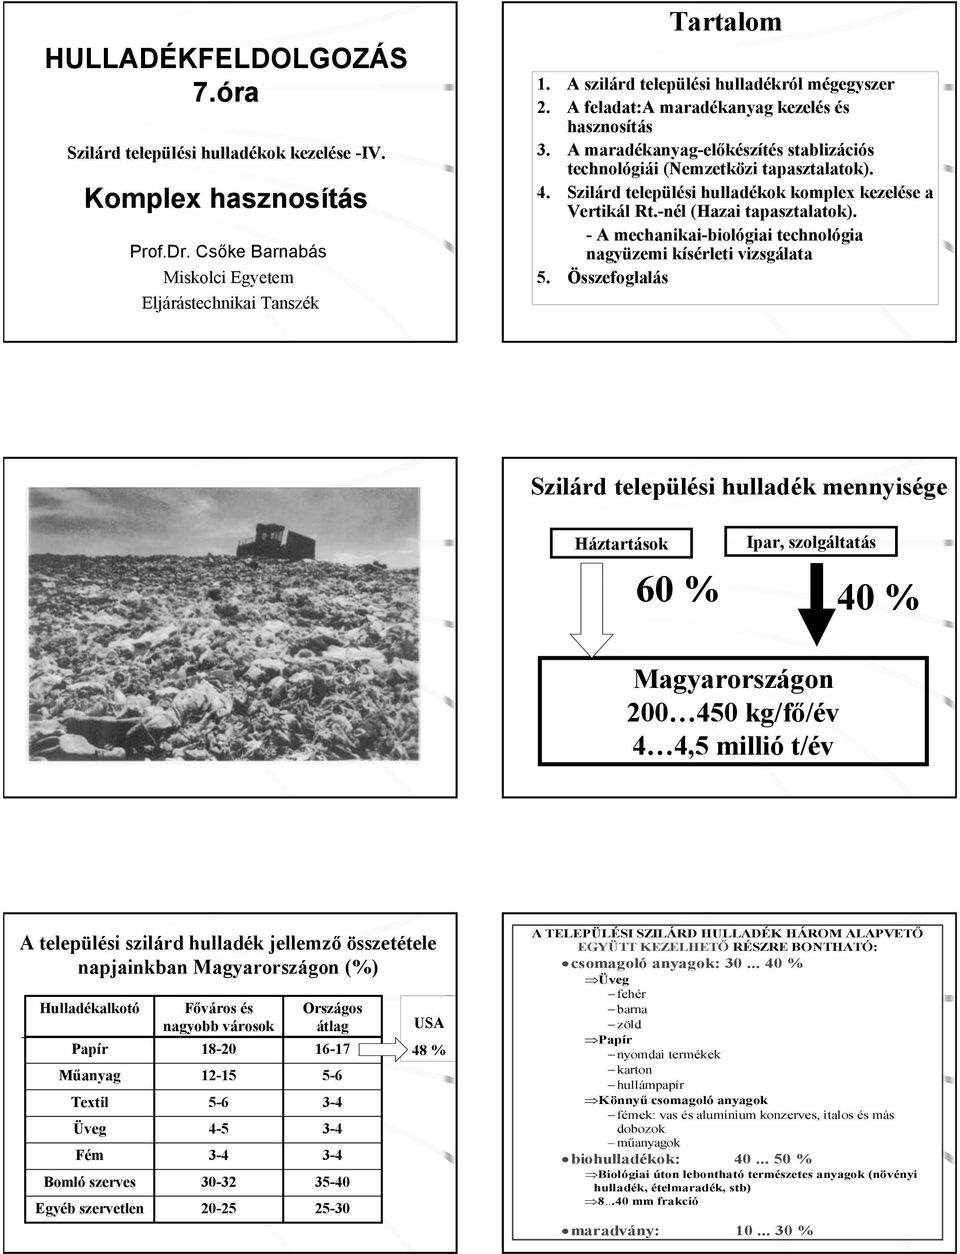 Szilárd települési hulladékok komplex kezelése a Vertikál Rt.-nél (Hazai tapasztalatok). - A mechanikai-biológiai technológia nagyüzemi kísérleti vizsgálata 5.